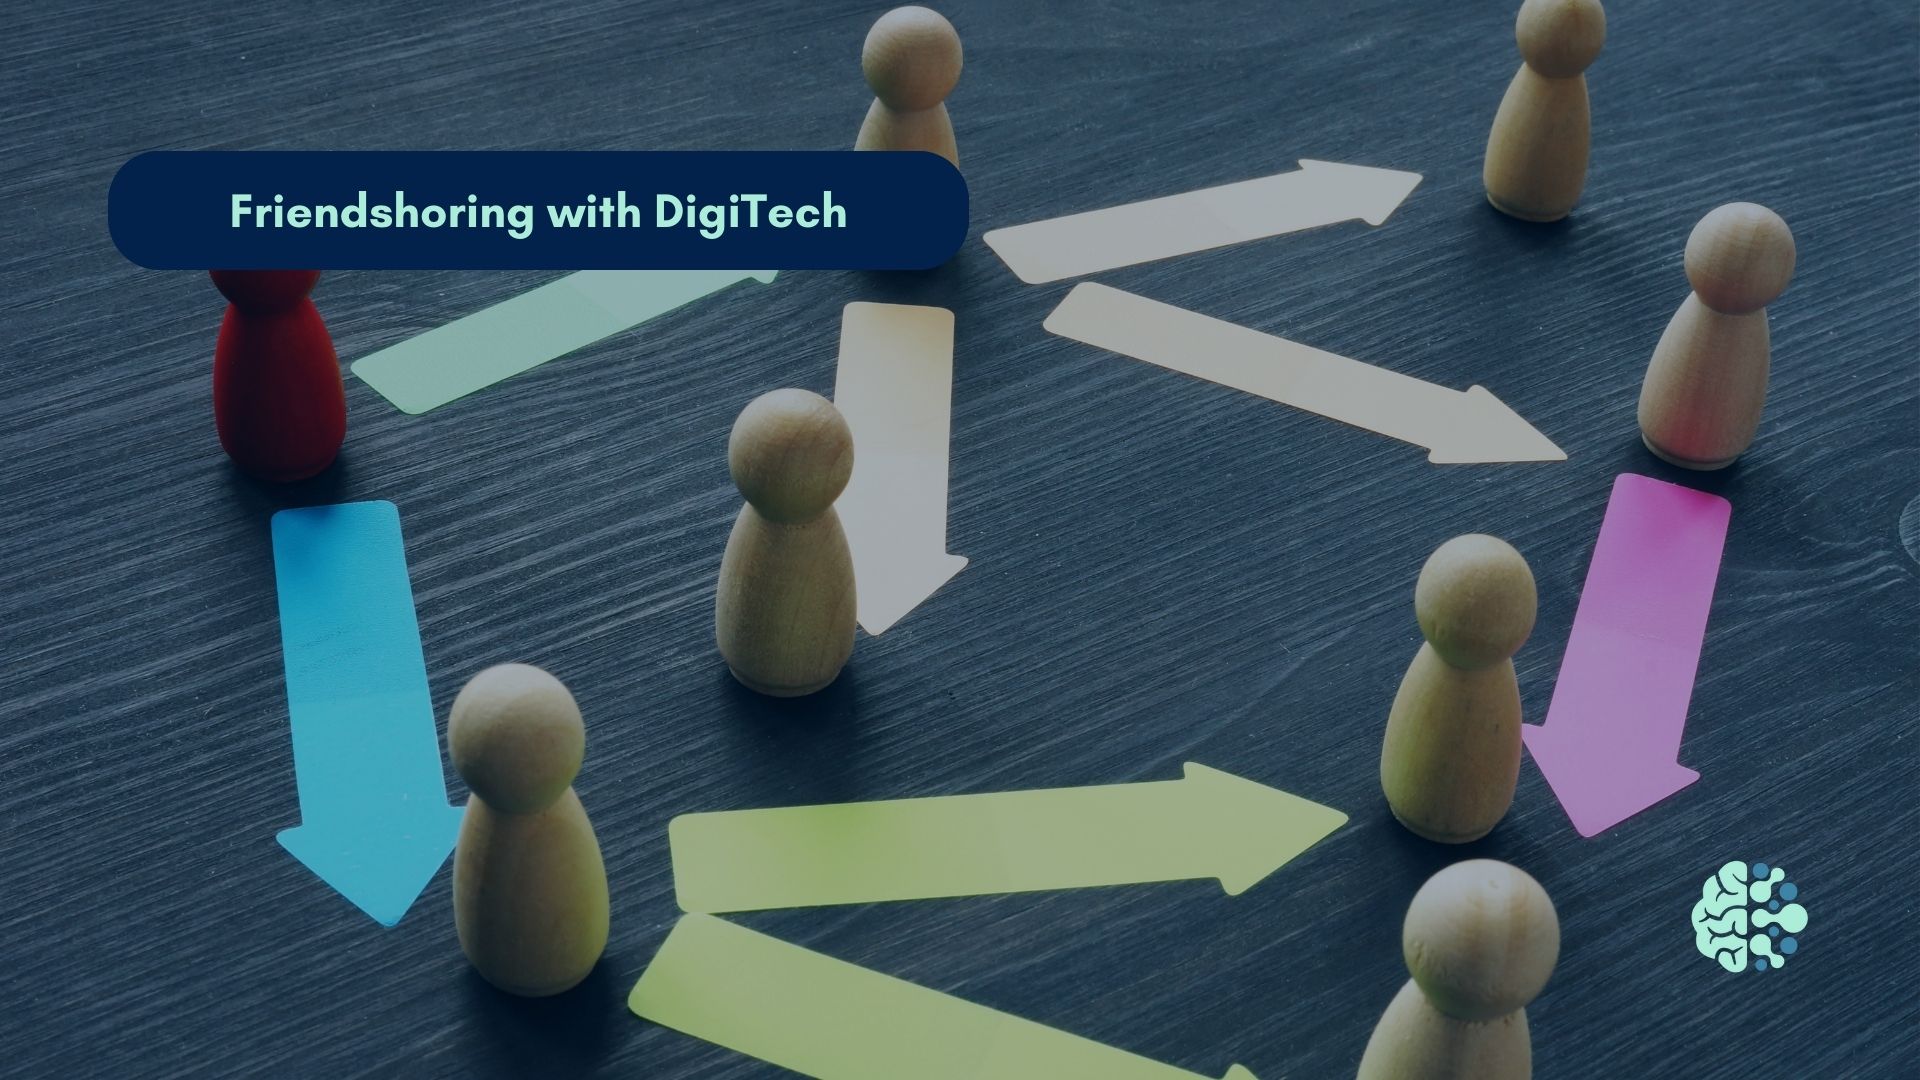 Friendshoring with DigiTech